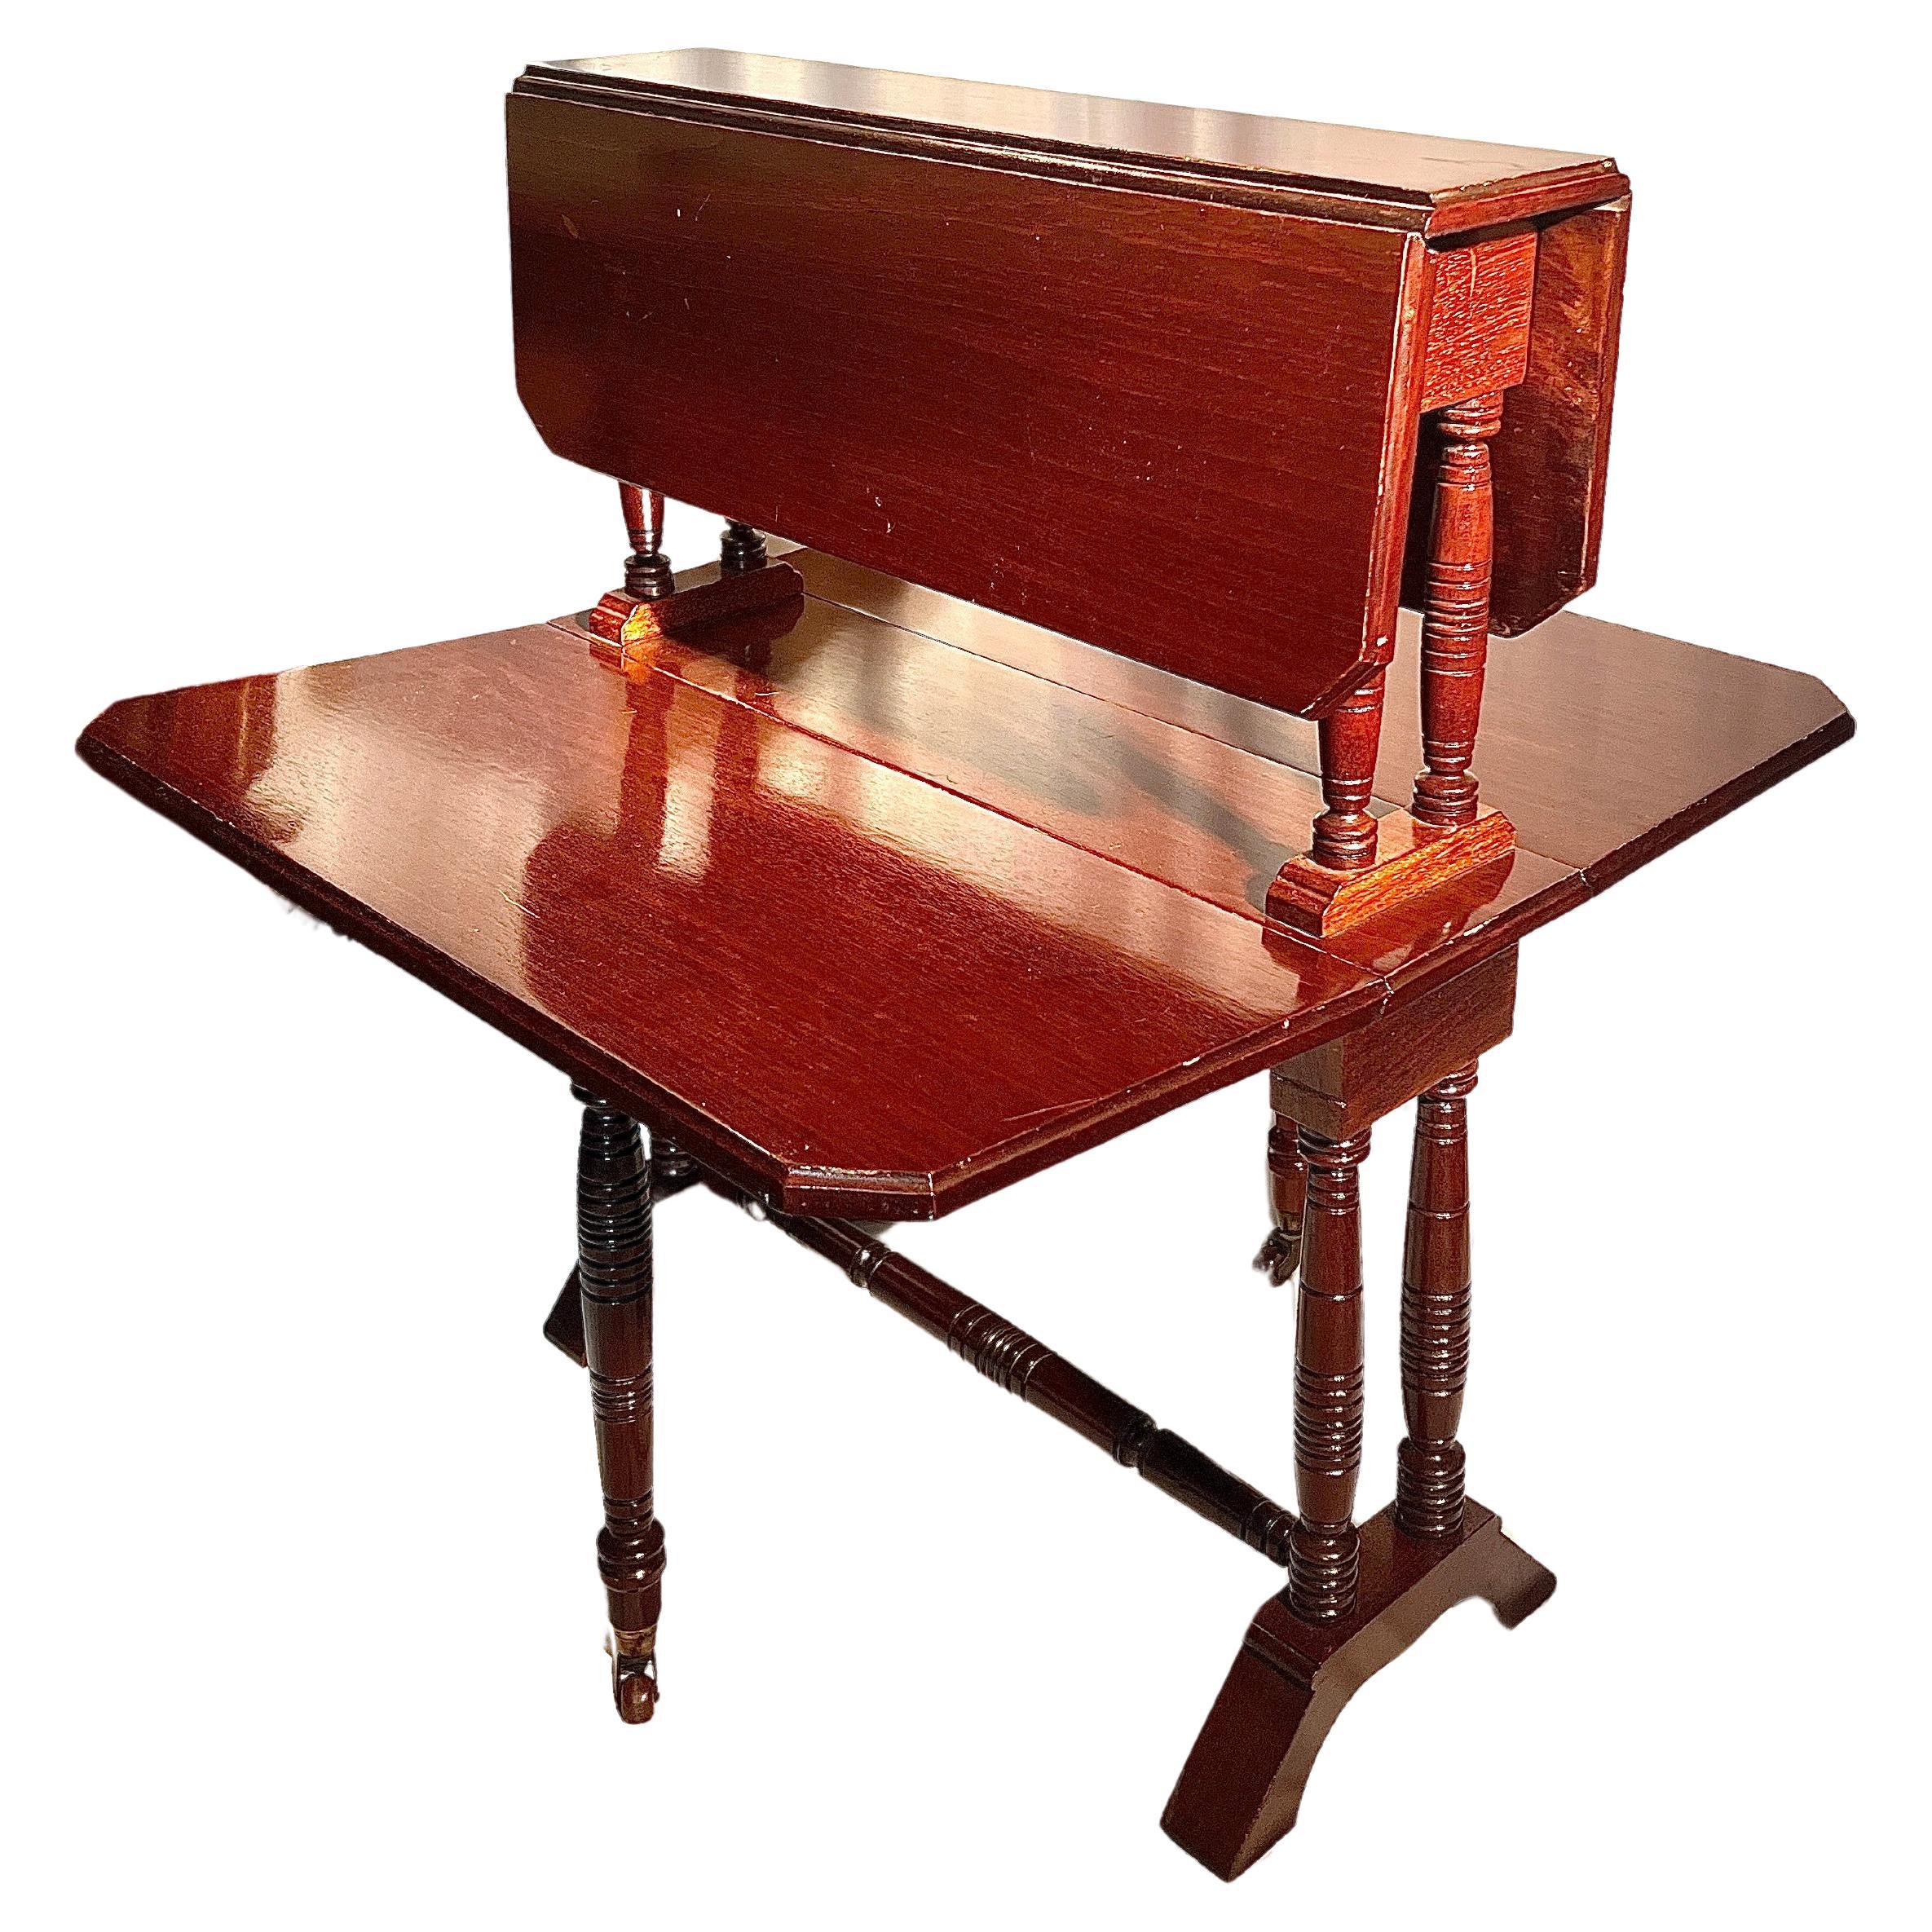 Antiker englischer Mahagoni-Doppel-Sutherland-Tisch, CIRCA 1880.
Die Messungen beziehen sich auf den Tisch, der auf dem ersten Foto als 